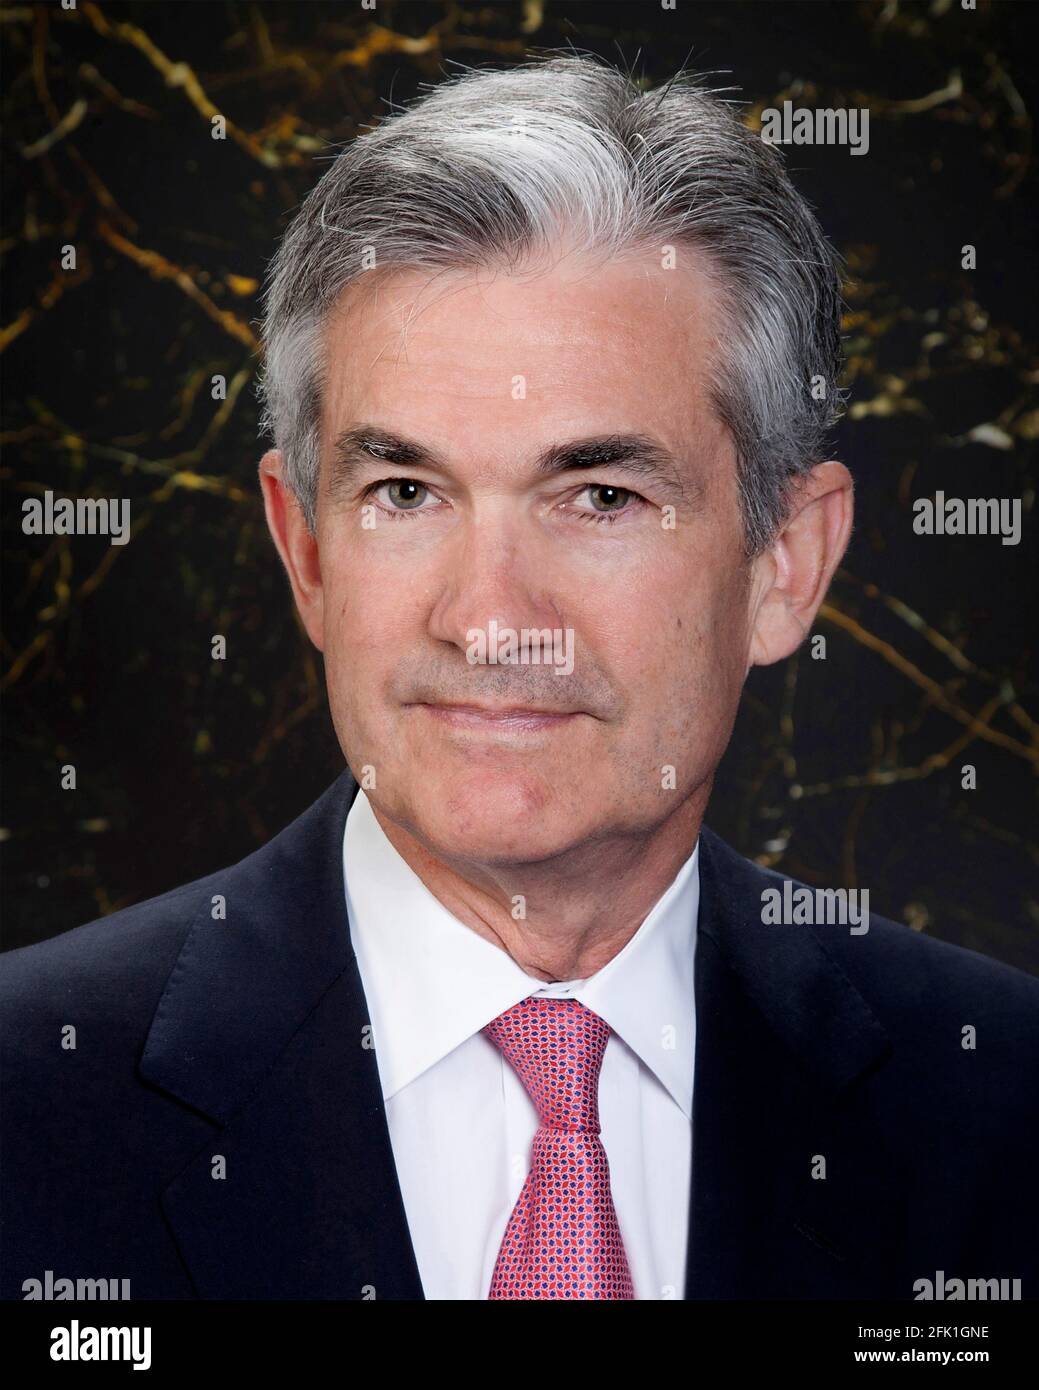 Jerónimo Powell. Retrato del Presidente de la Reserva Federal de 16th, Jerome Hayden 'Jay' Powell (n. 1953), foto oficial Foto de stock